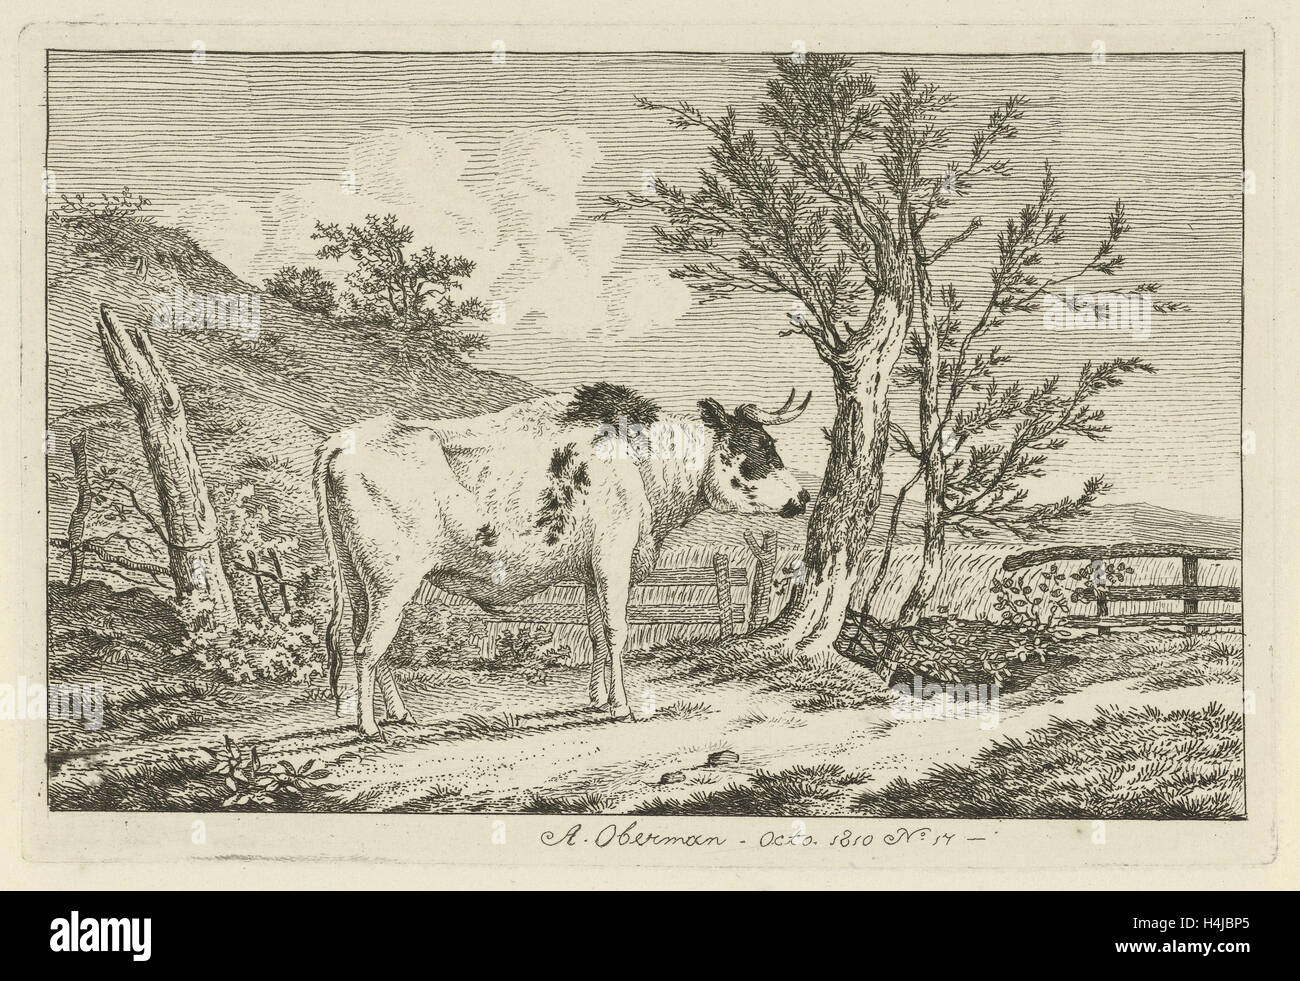 Bull dans un paysage, Anthony Oberman, 1810 Banque D'Images